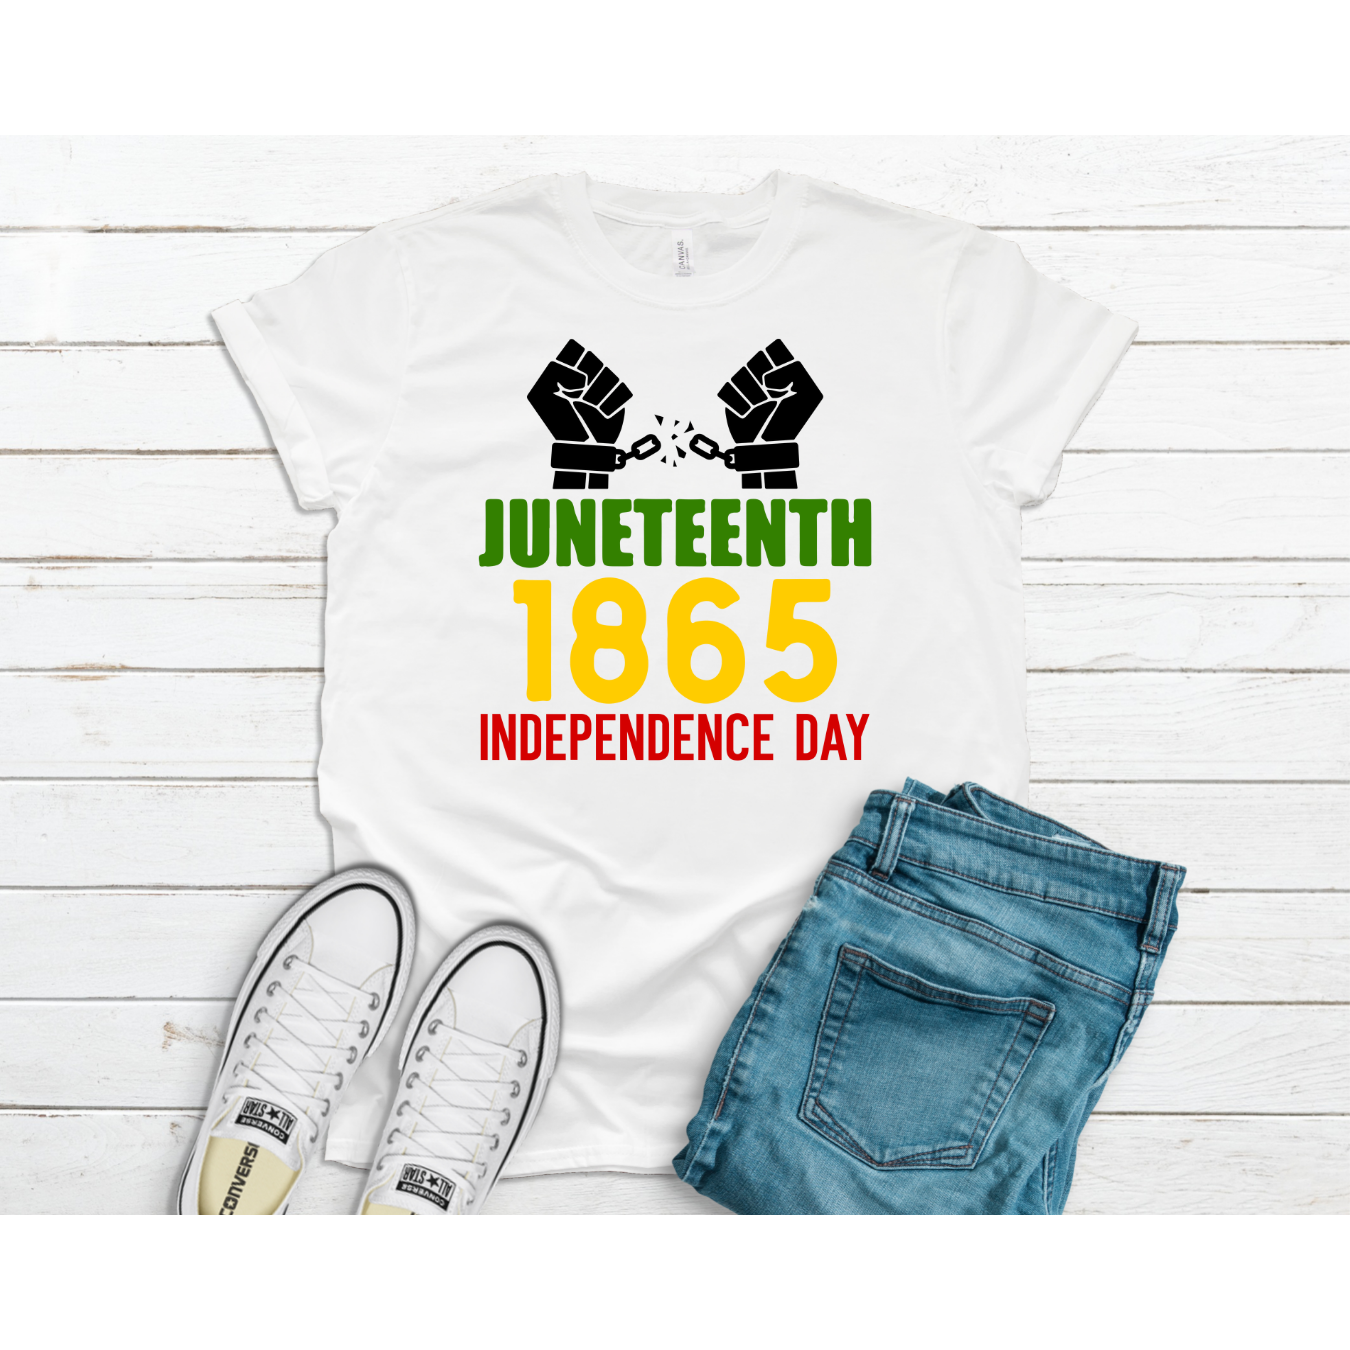 Juneteenth 1865 T-Shirt - Inspire Me Positive